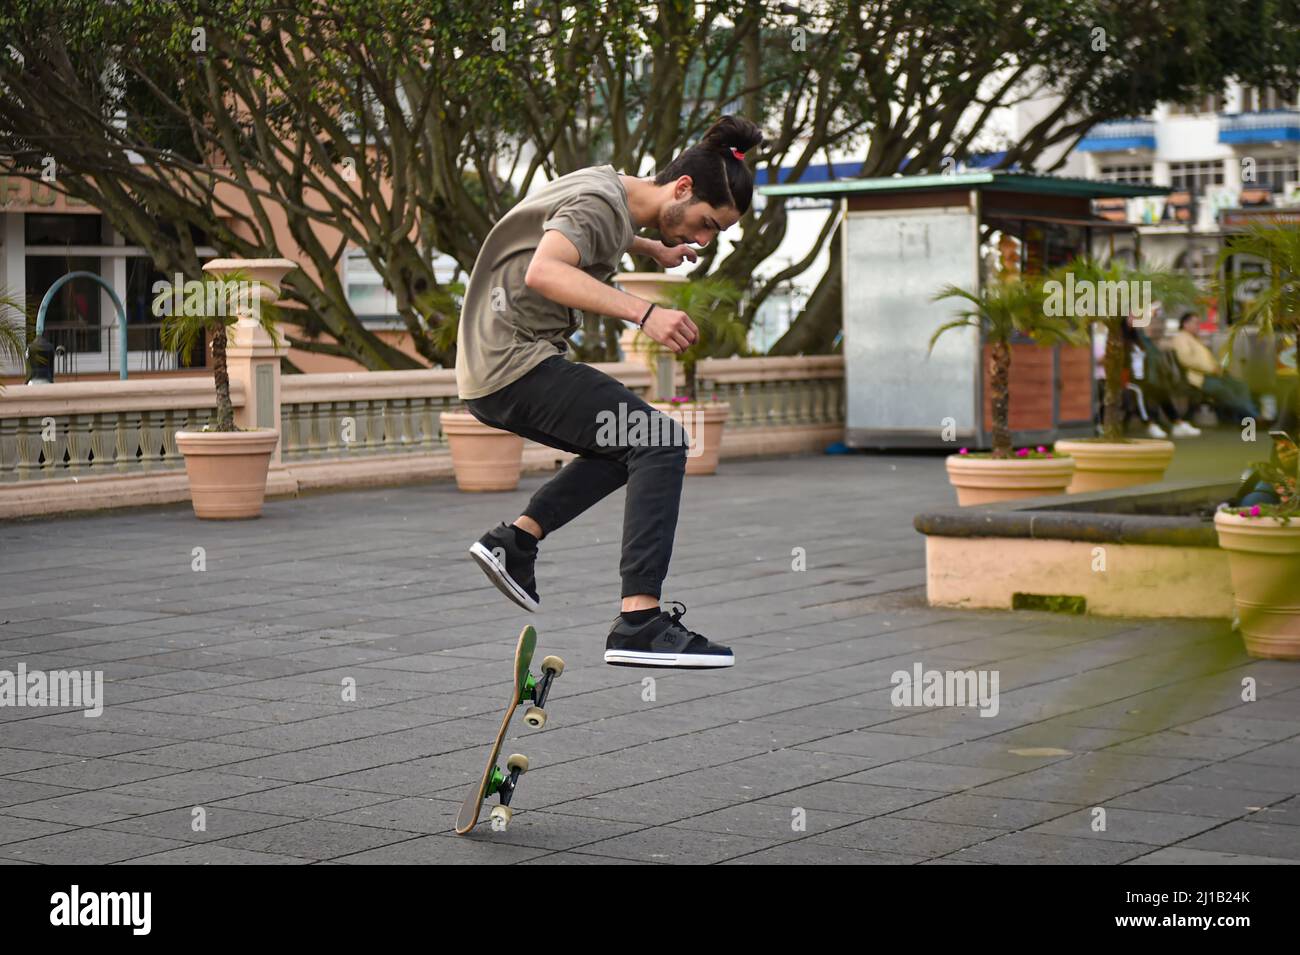 Skateboards pratiquant des tours dans le parc Juárez à Xalapa, au Mexique Banque D'Images